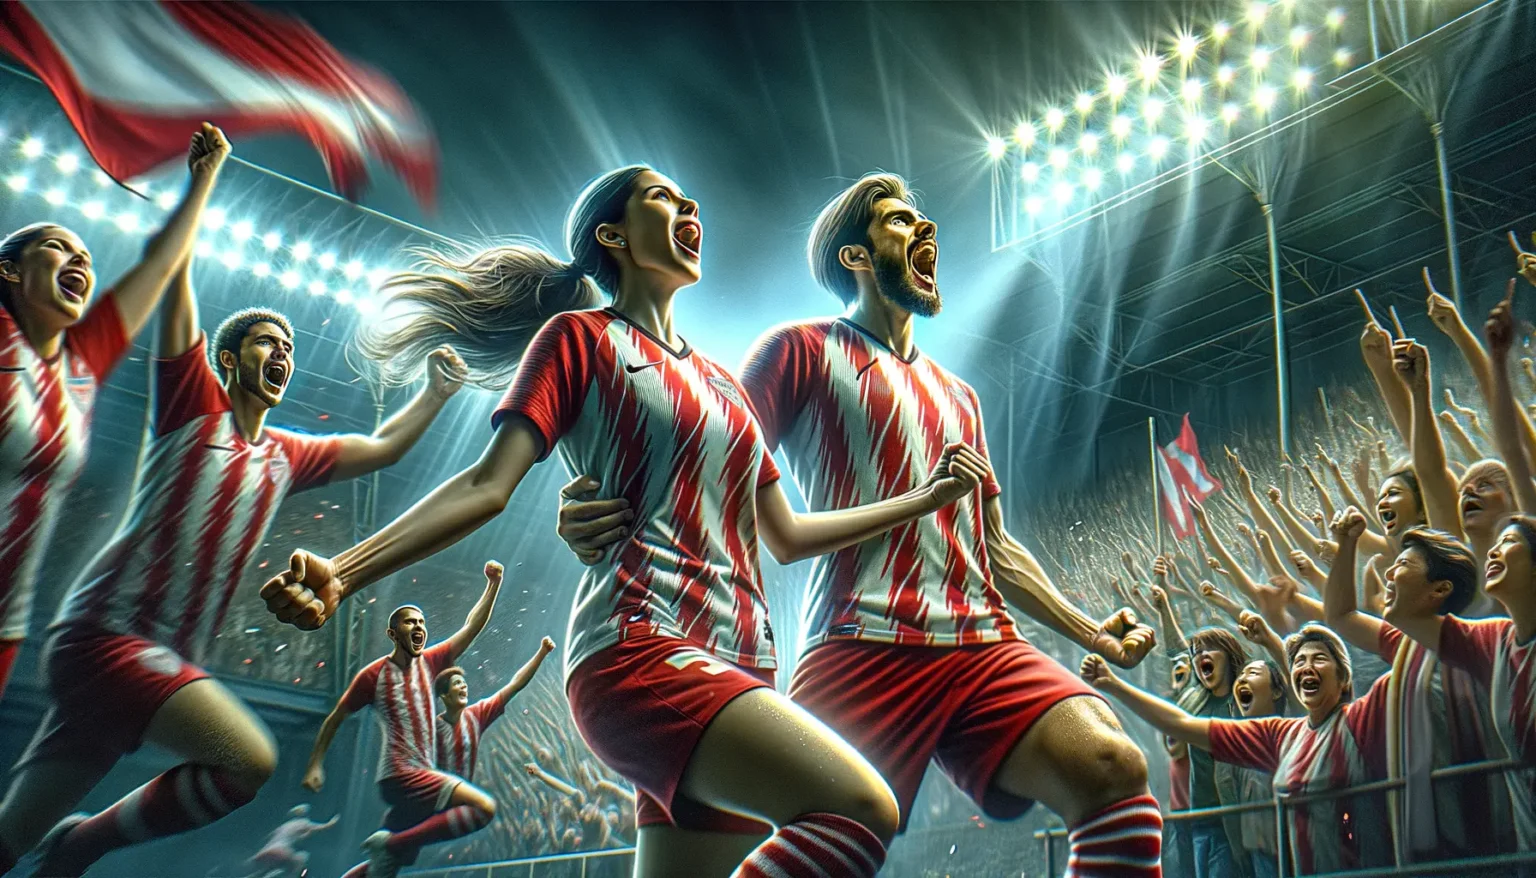 Illustration eines begeisterten Fußballteams und ihrer Fans, die im Stadion unter Flutlicht jubeln, mit energischer Körperhaltung und ausdrucksstarken Gesichtern, die Emotionen von Siegesfreude und Einheit ausstrahlen.